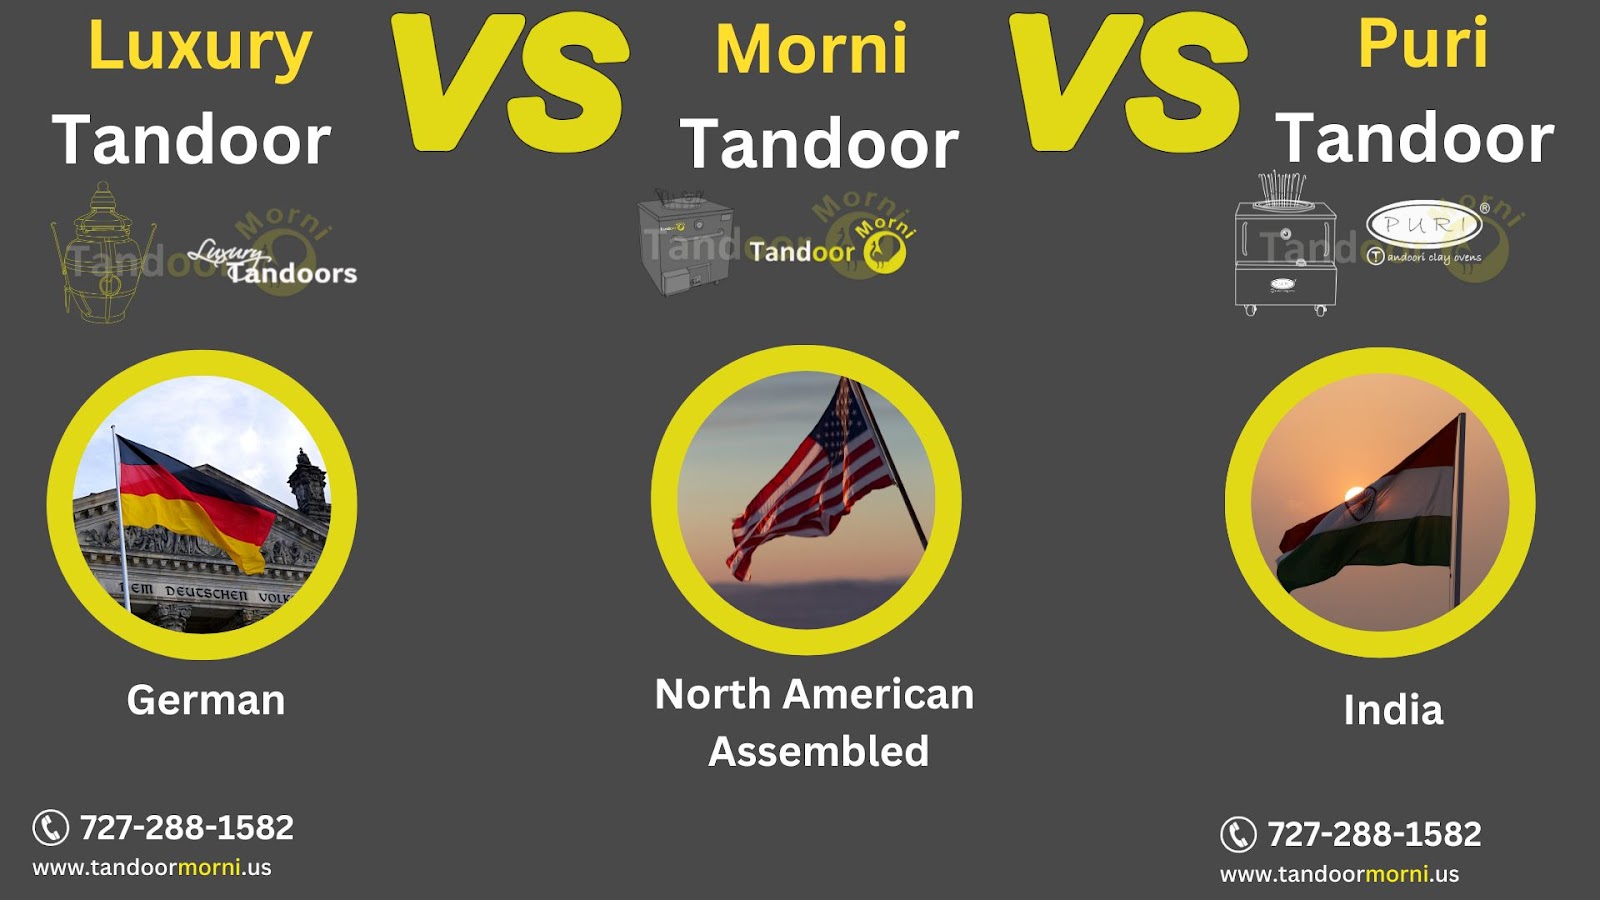 Tandoor Morni versus Luxury Tandoor vs Puri Tandoor Industry or Assembling Unit 

Luxury tandoor is manufactured in Germany, Morni Tandoor is built in North America, and Puri Tandoor is manufactured in India.